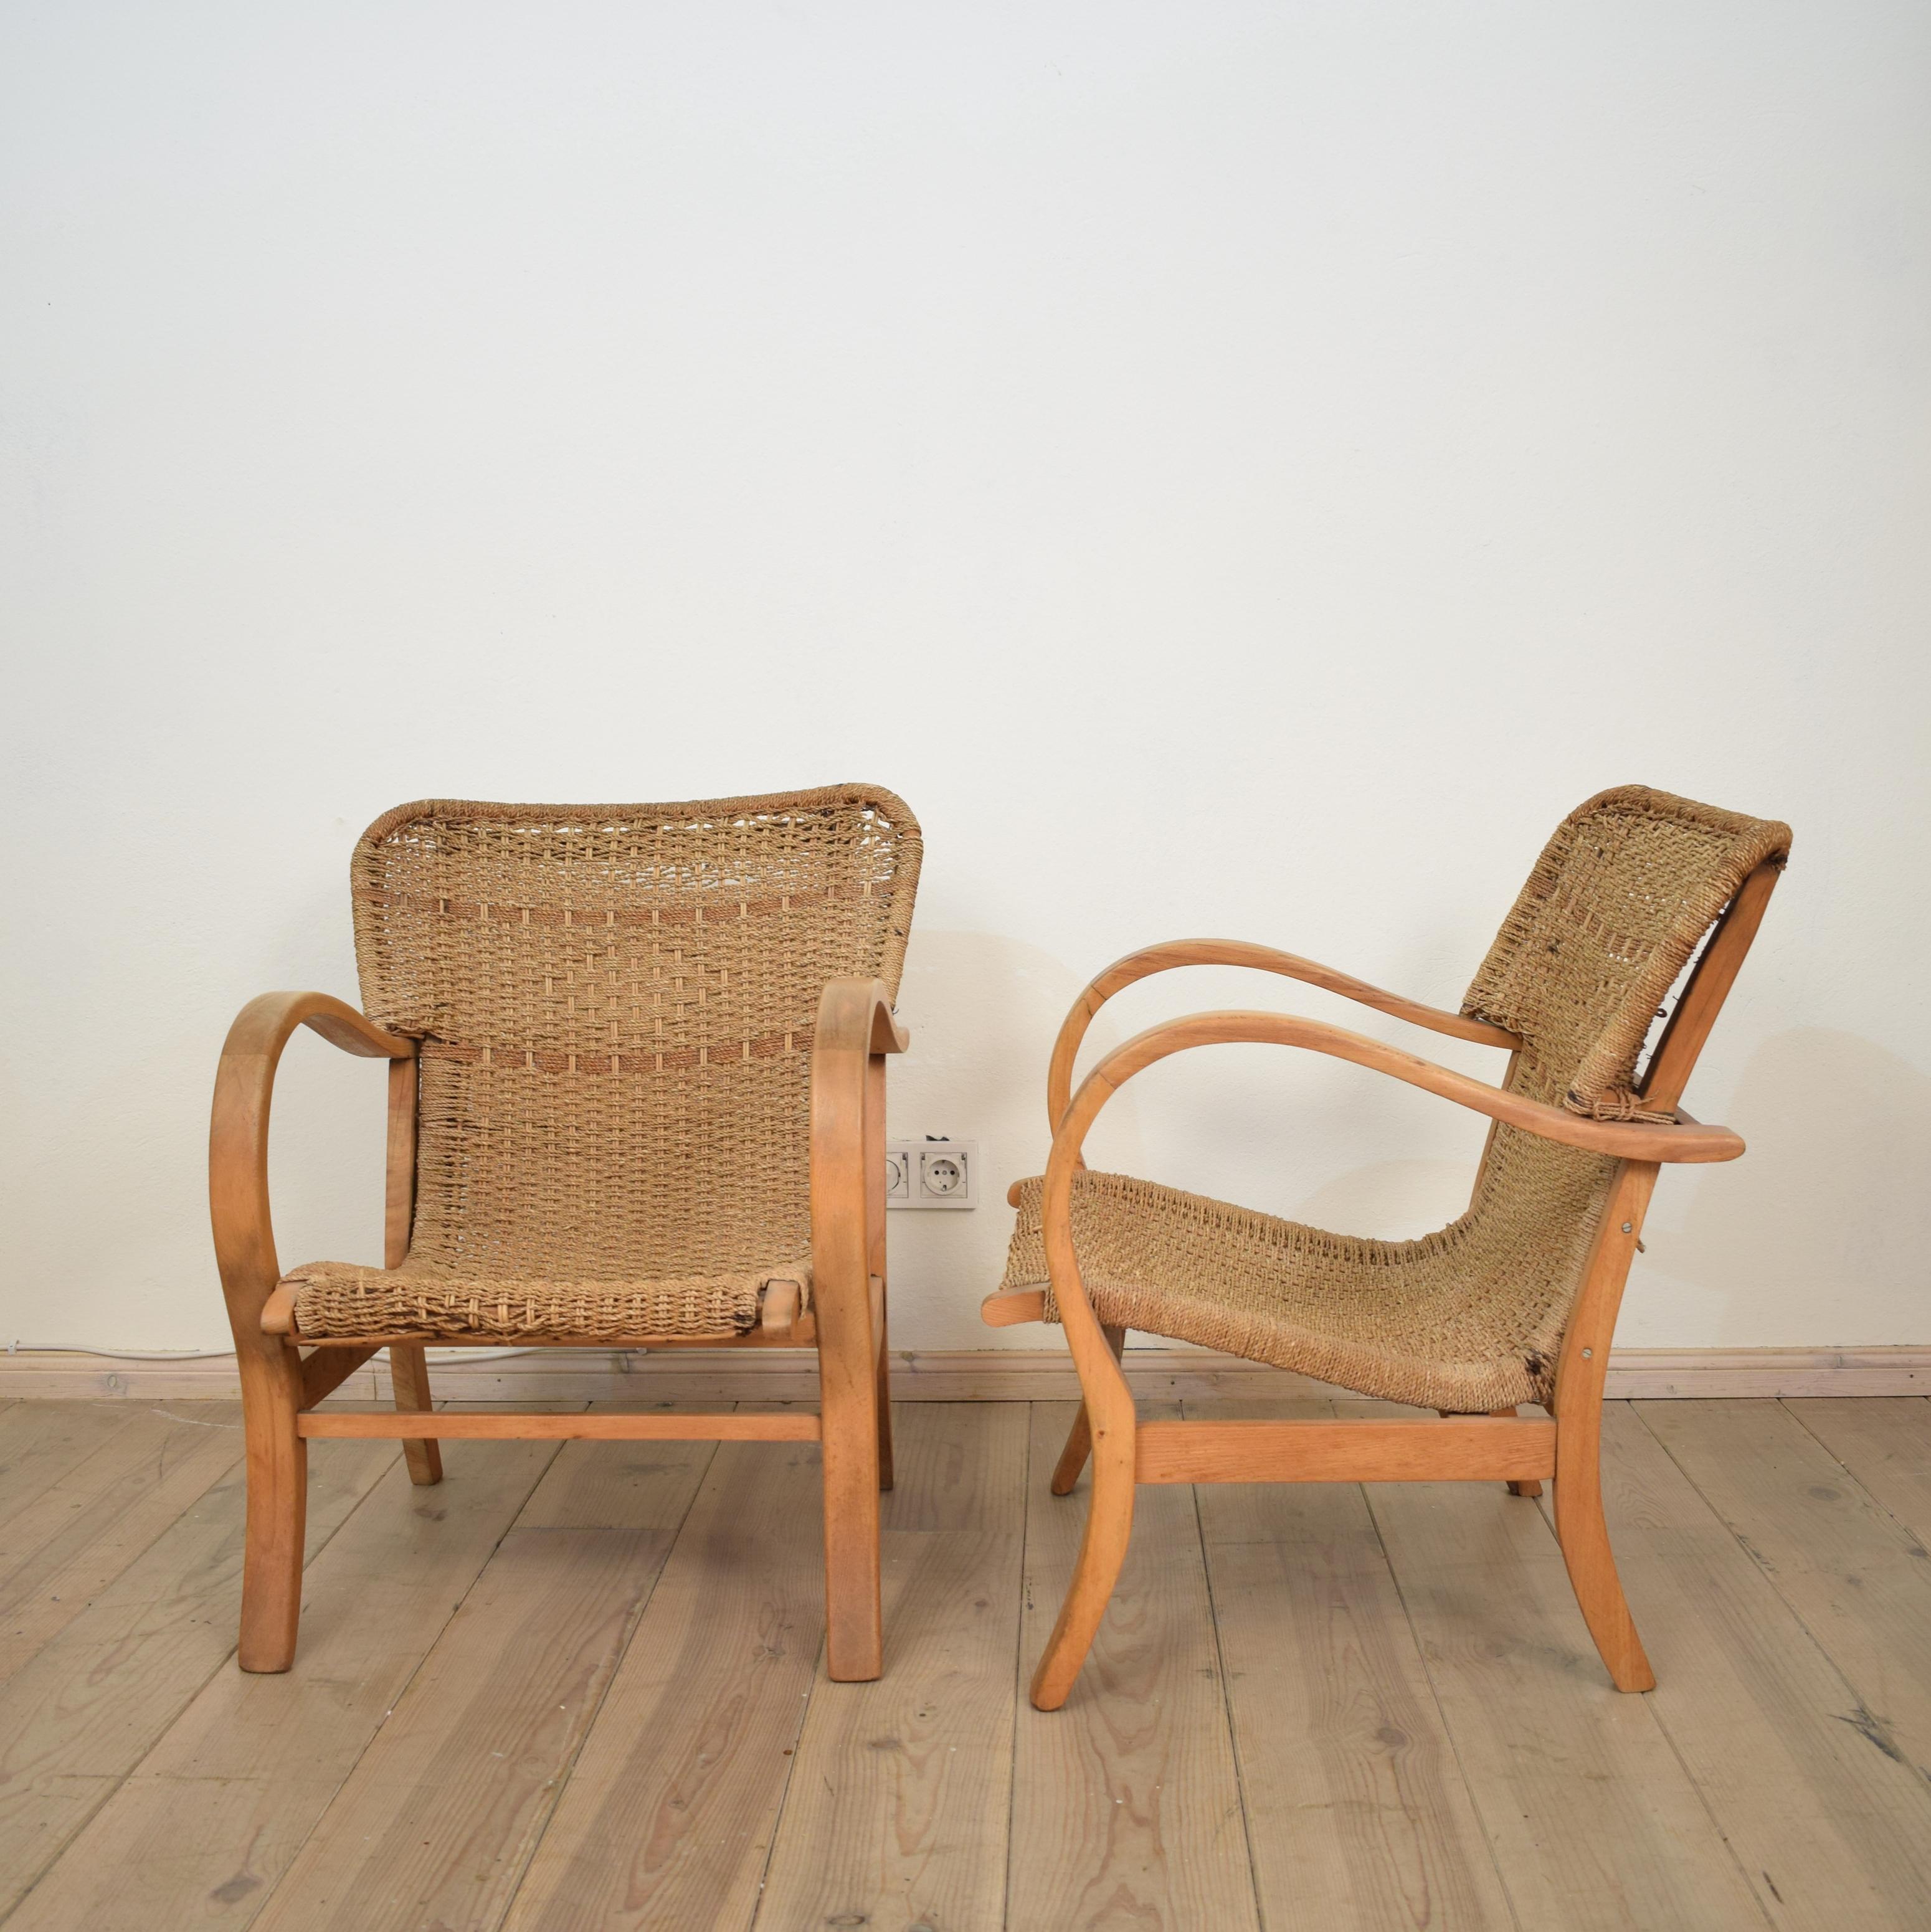 Ein Paar Bauhaus-Sessel aus Buche und geflochtenem Seil/Schilfrohr von Erich Dieckmann, 1920 (Handgewebt)